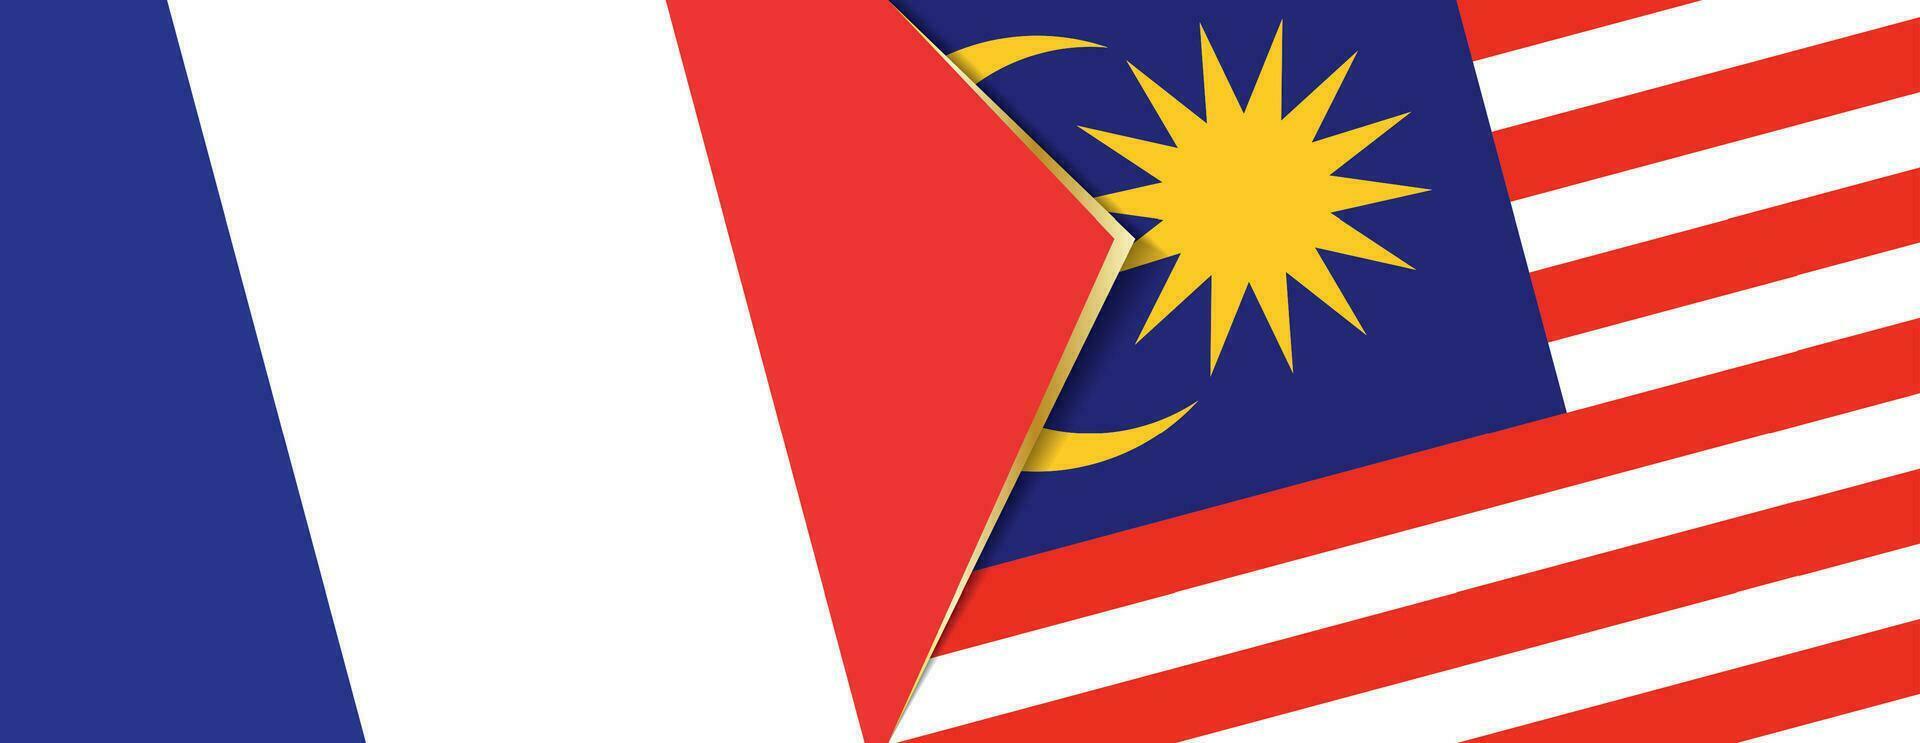 França e Malásia bandeiras, dois vetor bandeiras.